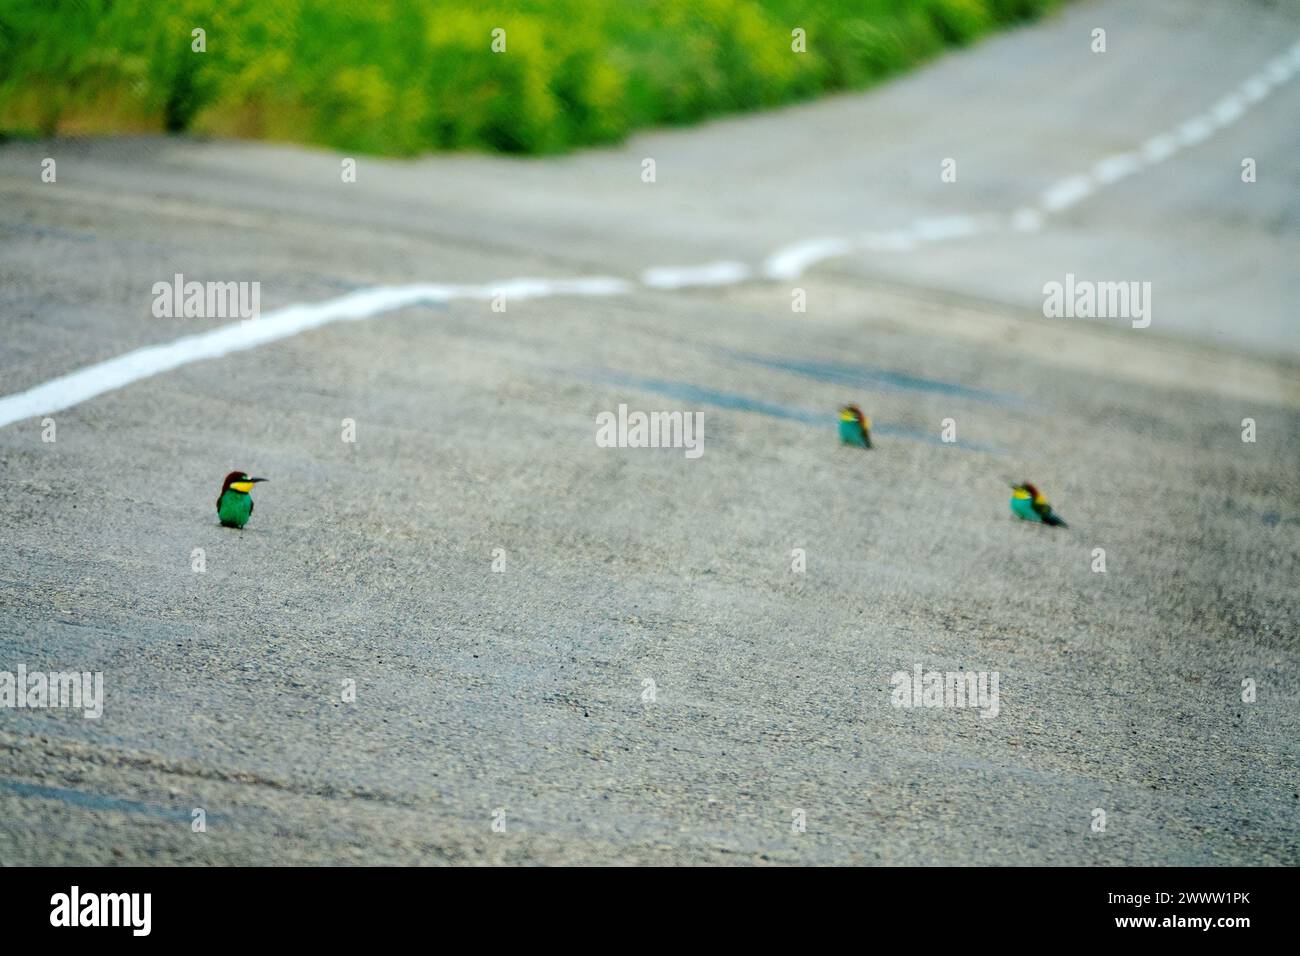 Europäische Bienenfresser (Merops apiaster) sitzen auf einer Asphaltstraße, weil sie warm sind und Insekten sammeln Stockfoto